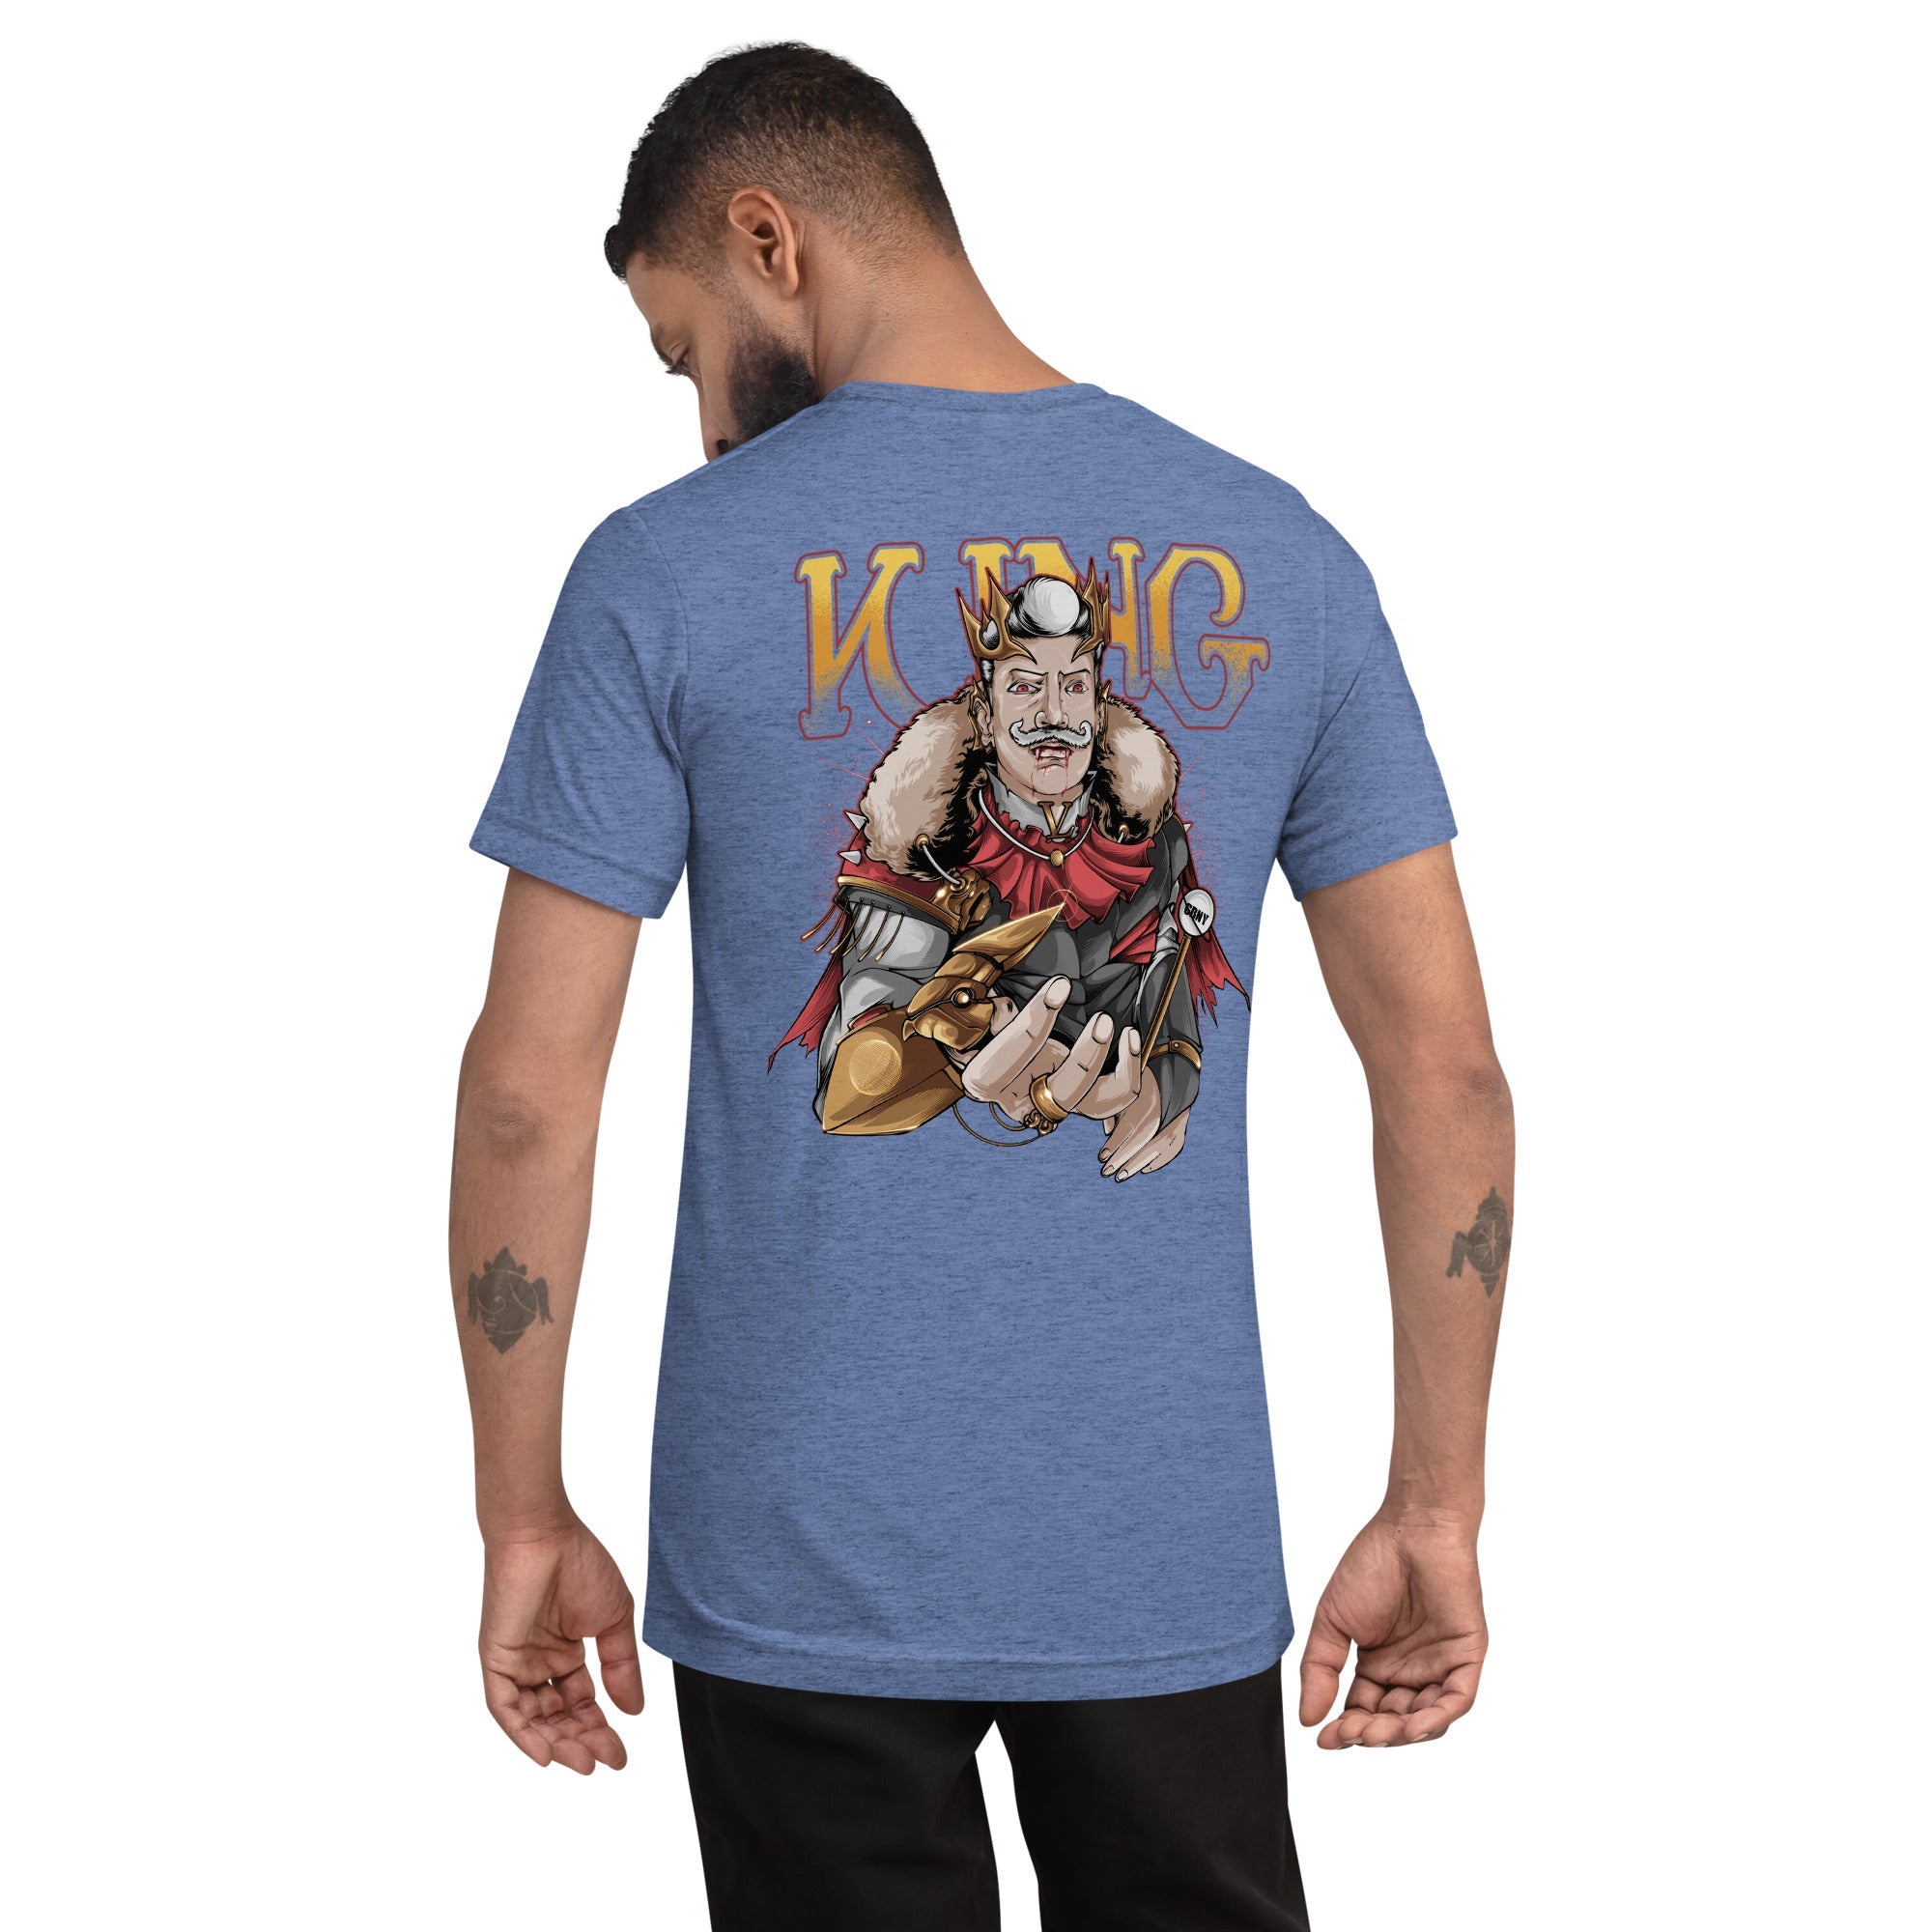 GBNY Blue Triblend / XS Vamp Life X GBNY "Vamp King" T-shirt - Men's 8741511_6488